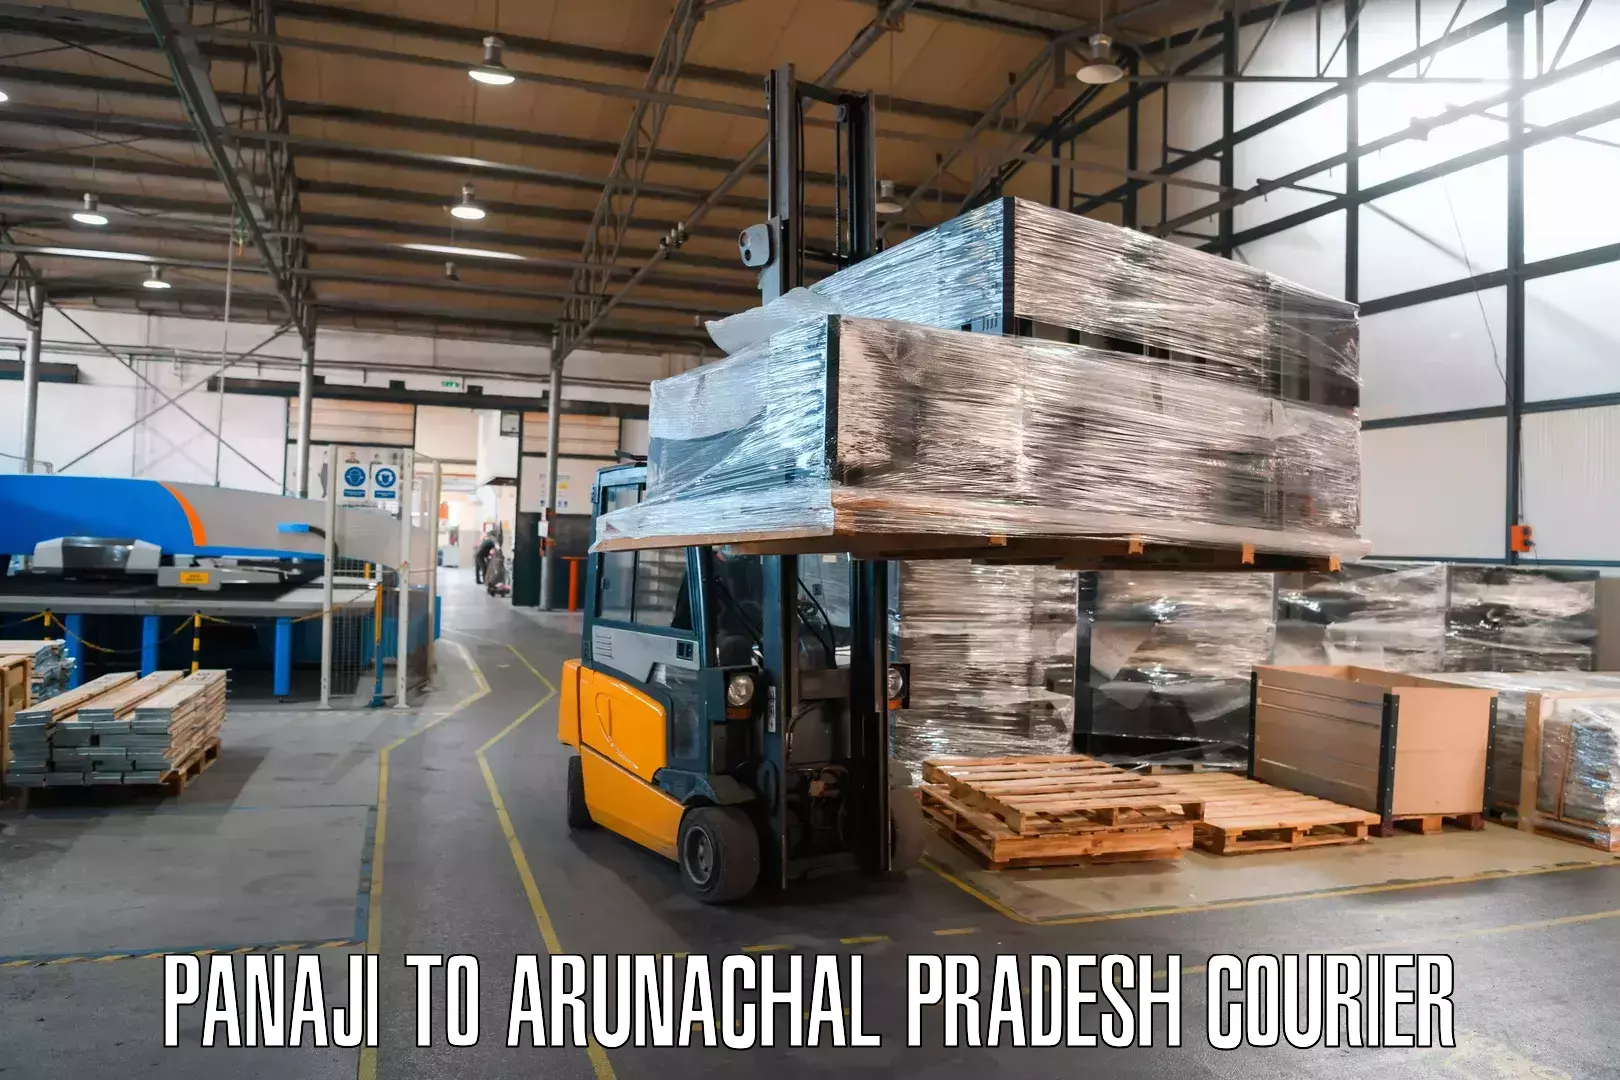 Digital courier platforms Panaji to Arunachal Pradesh